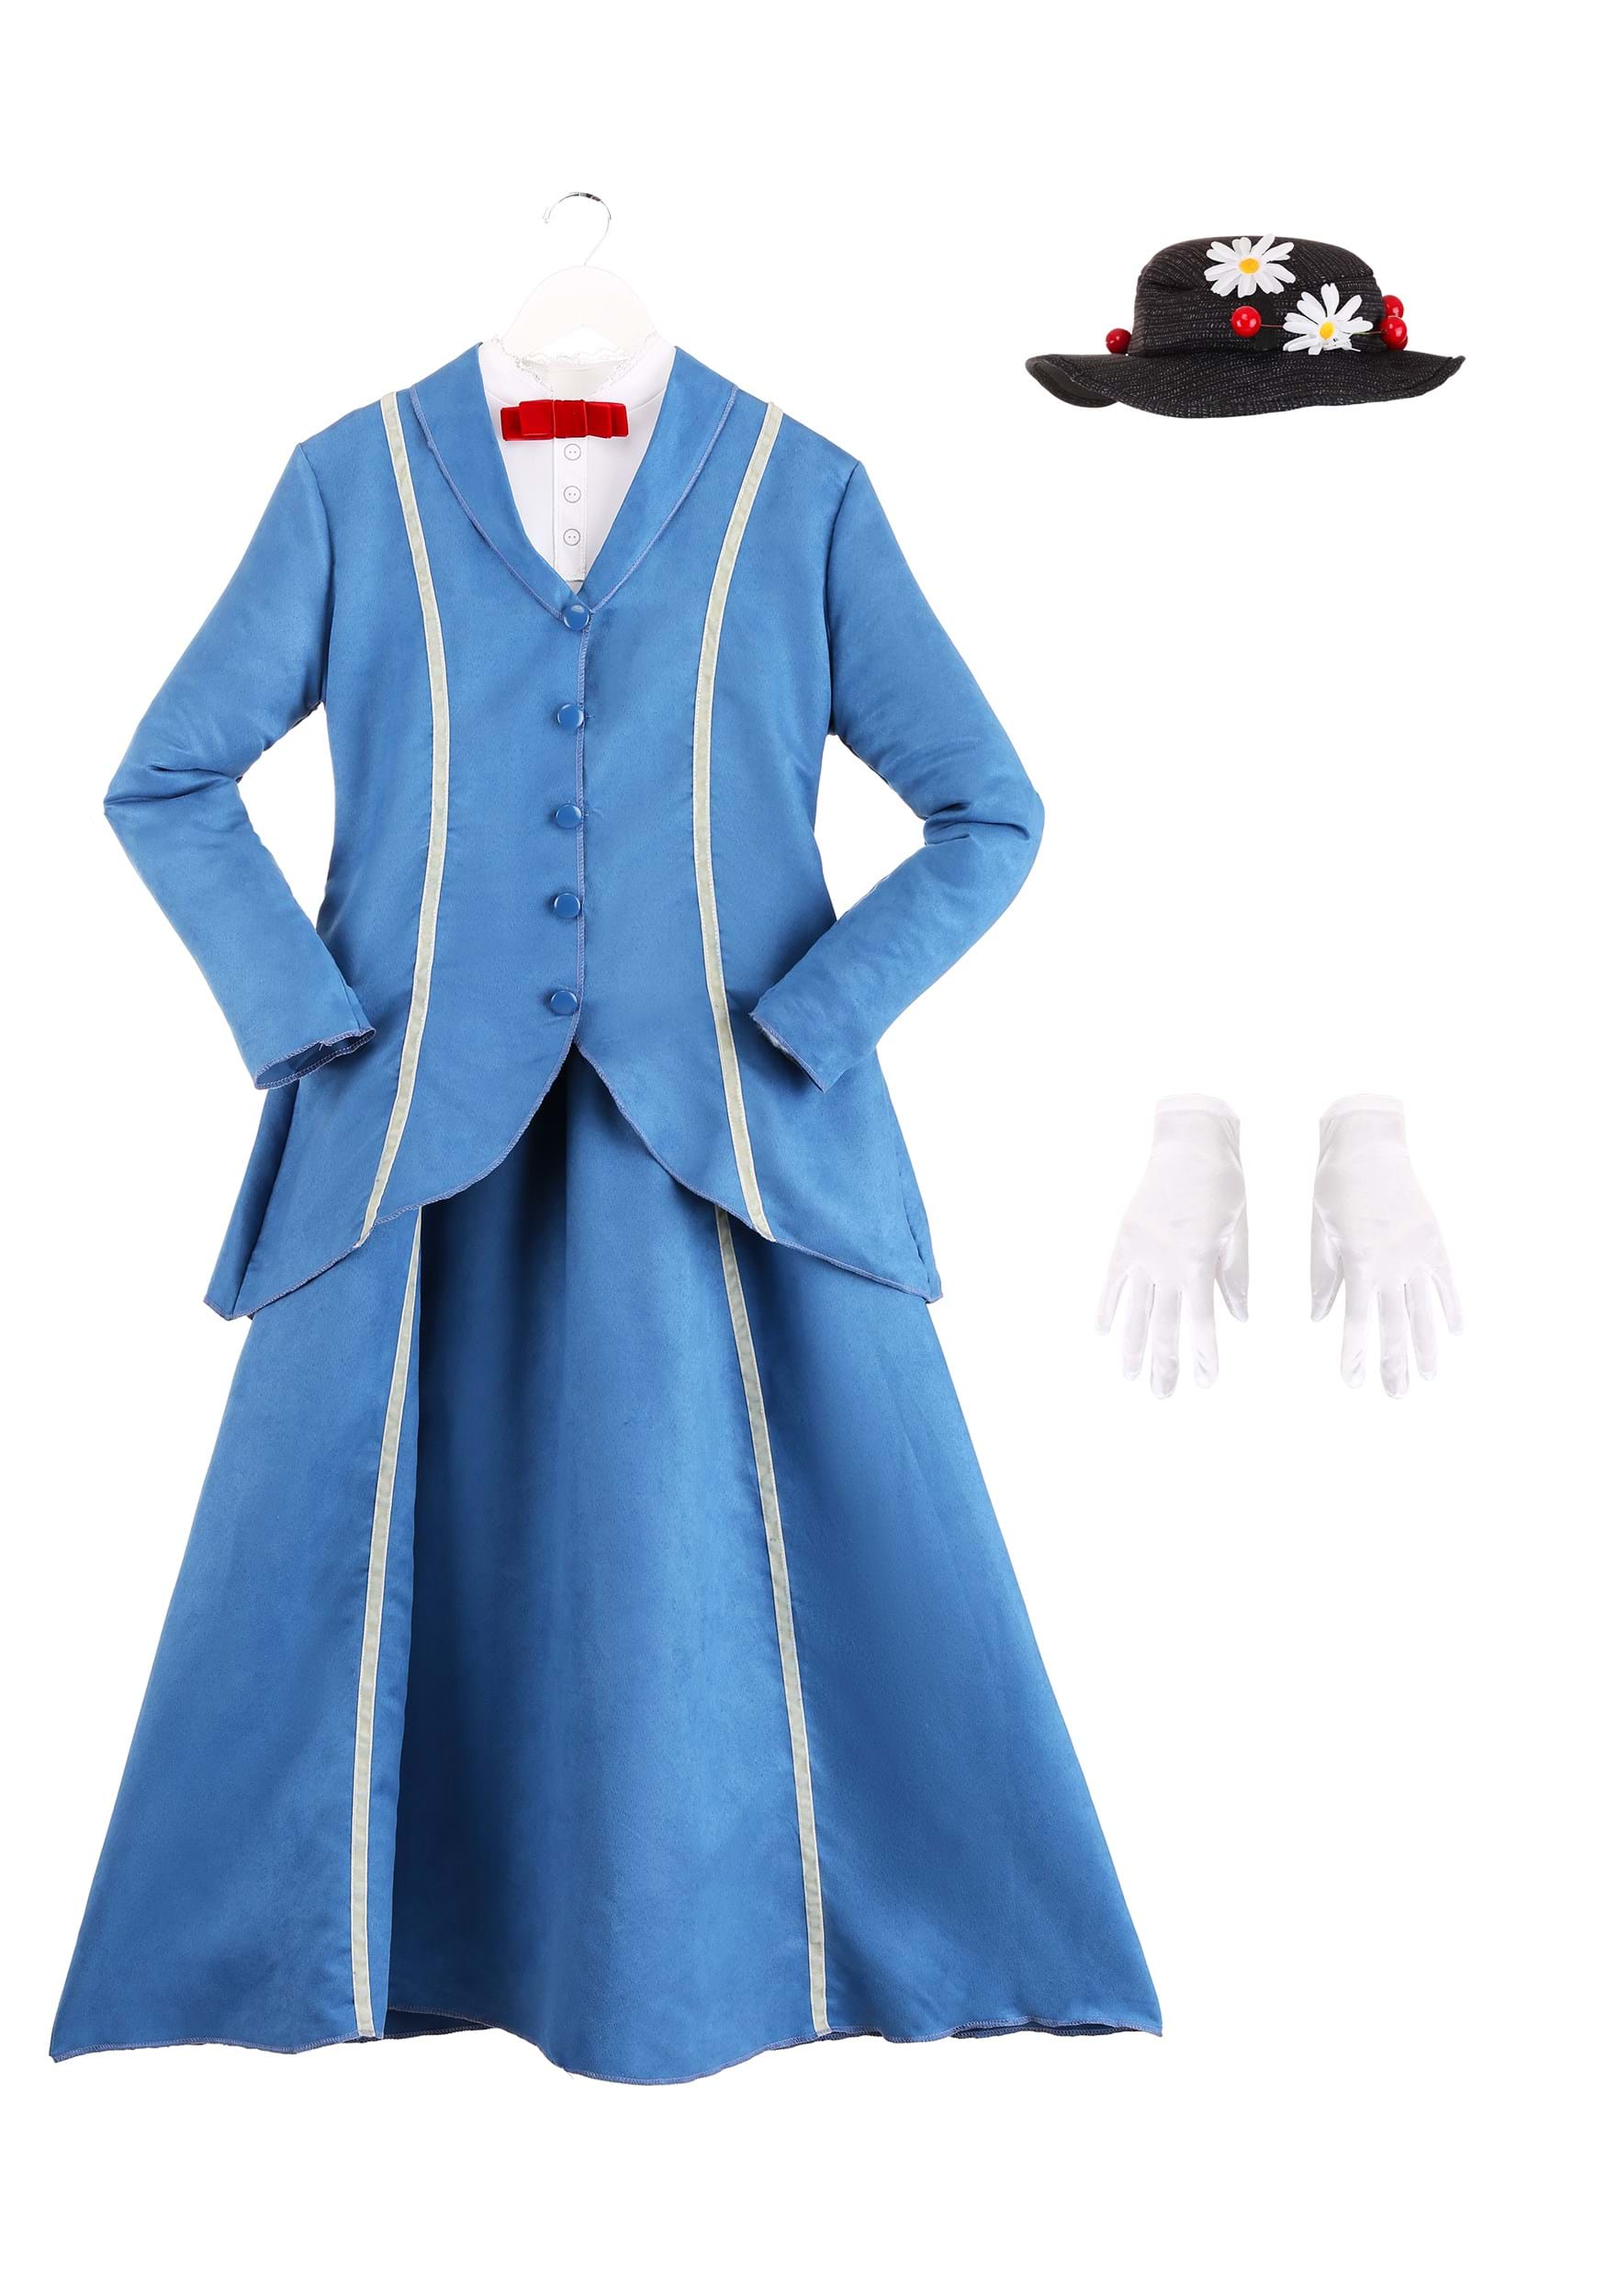 Mary Poppins Women's Blue Coat